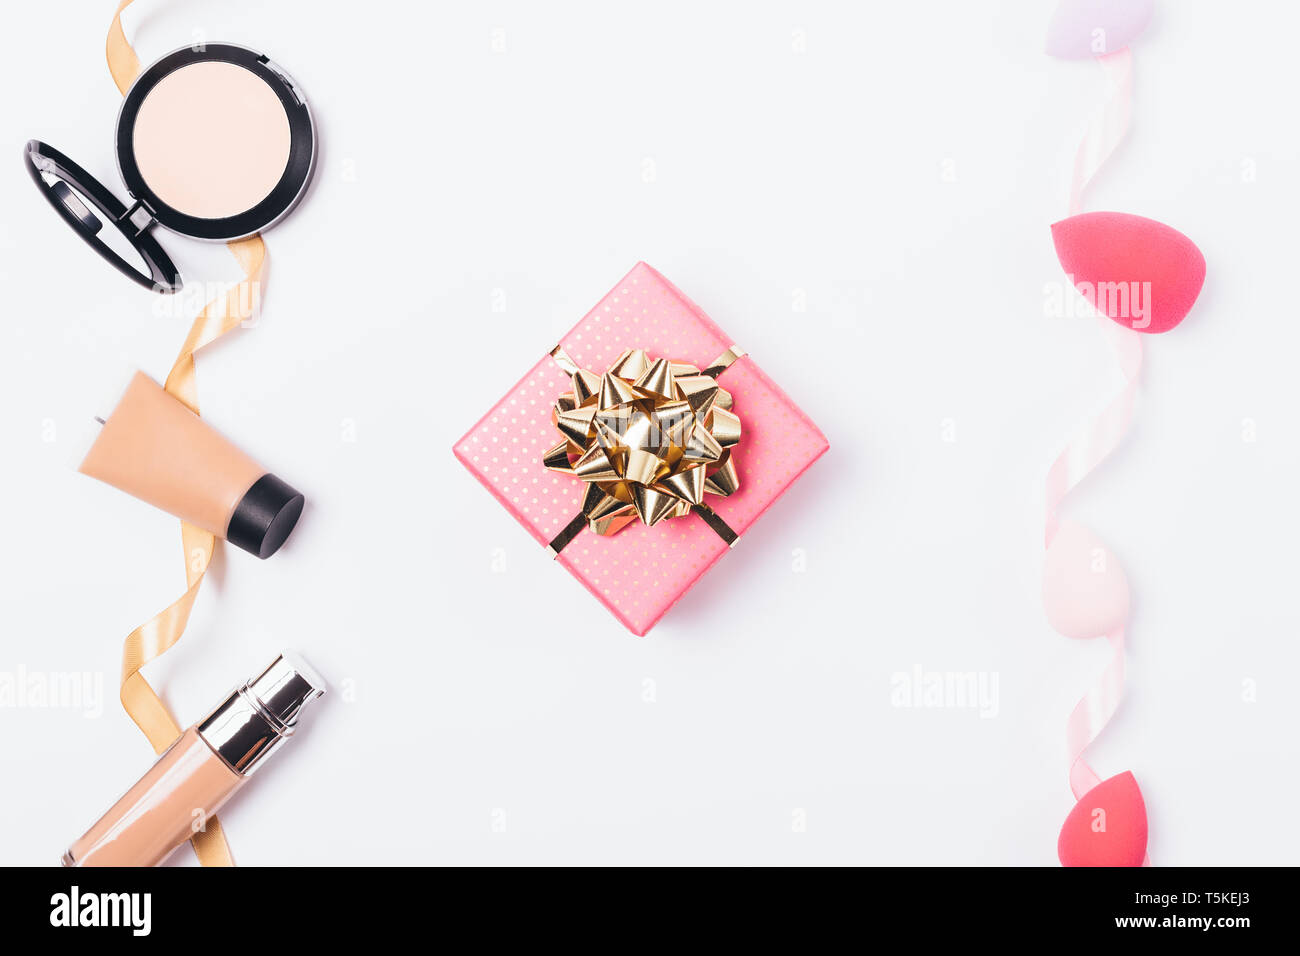 Rosa confezione regalo con golden bow tra cosmetica decorativa per affrontare anche la tonalità della pelle e il trucco spugne per la sua applicazione, vista dall'alto su sfondo bianco. Foto Stock